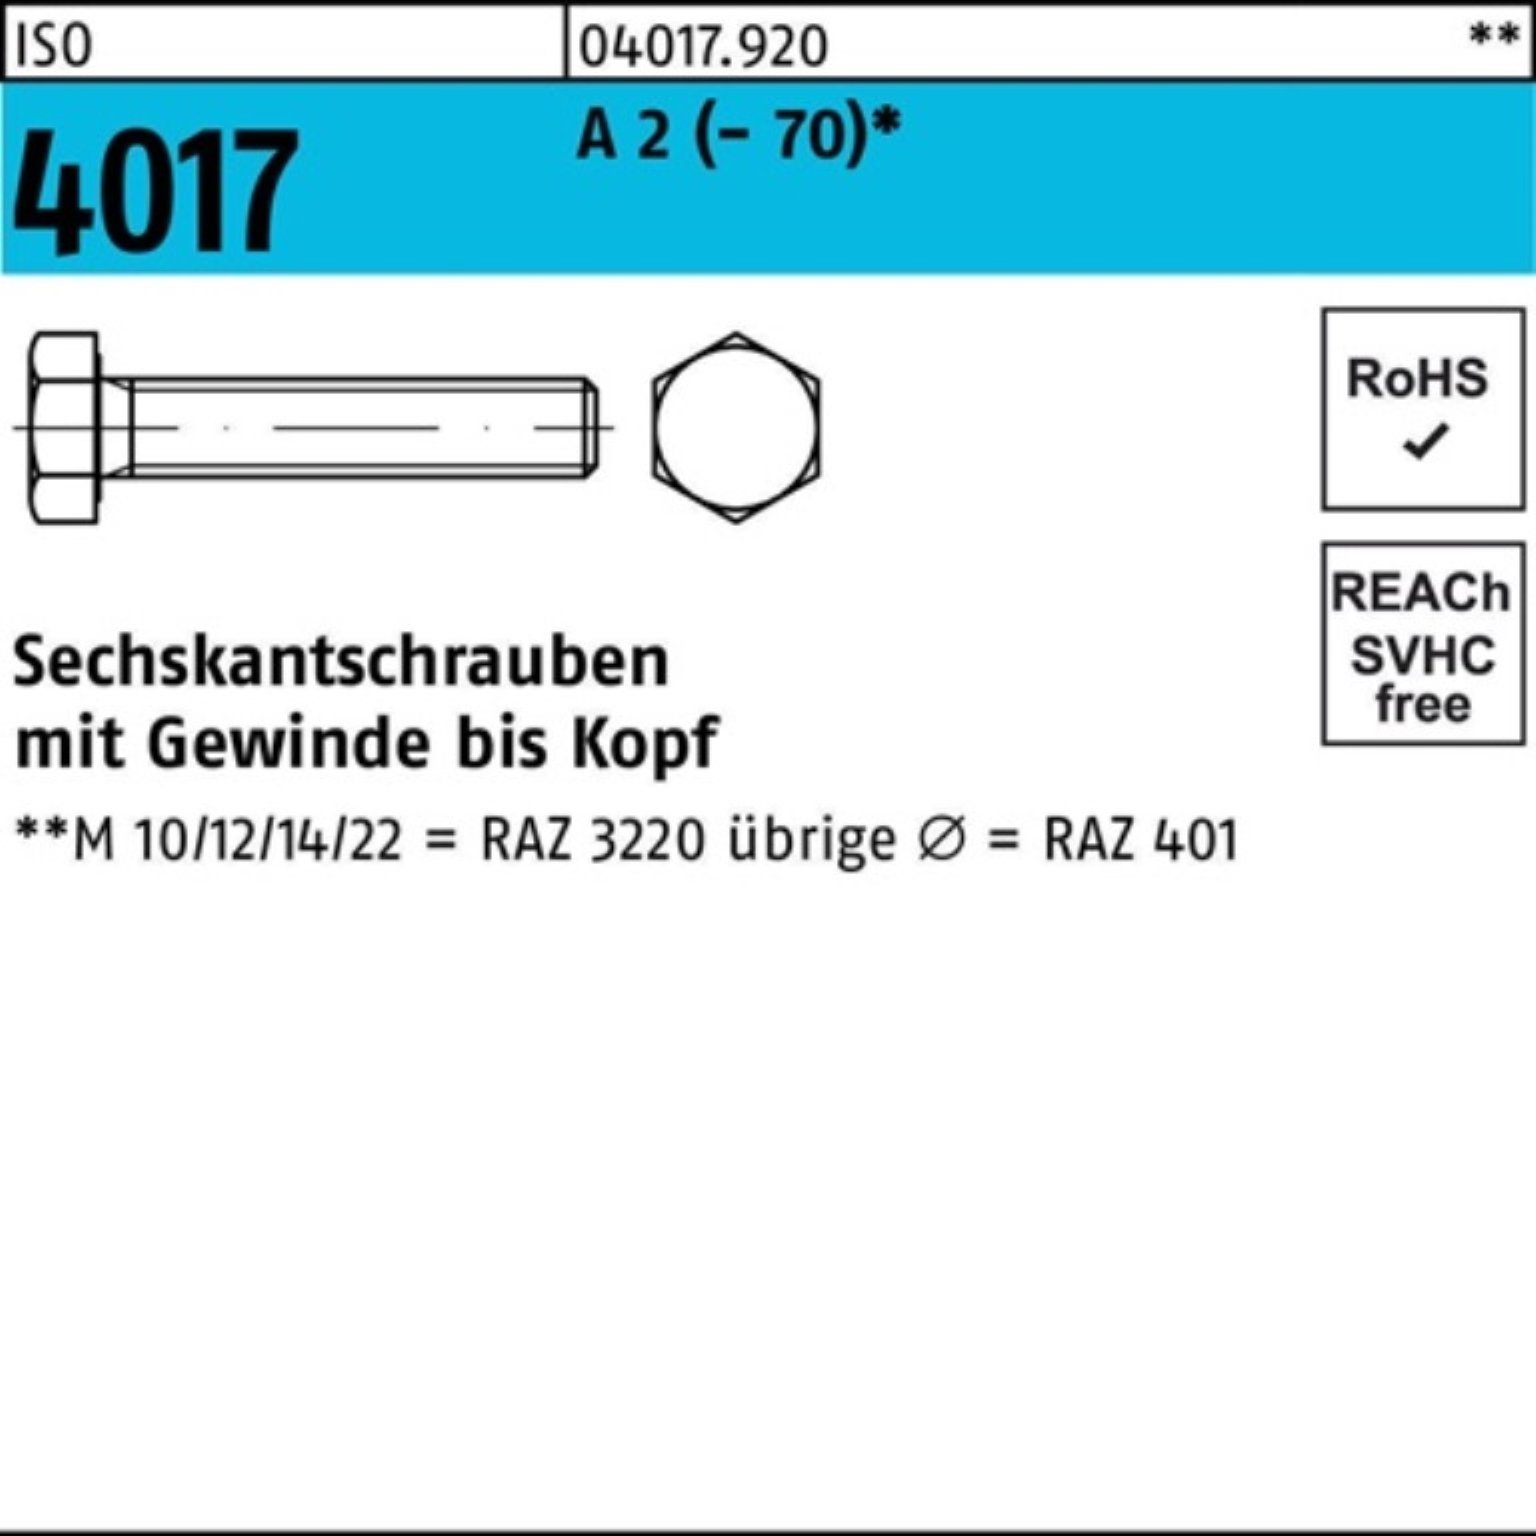 Bufab Sechskantschraube 100er Pack Sechskantschraube ISO 4017 VG M18x 55 A 2 (70) 25 Stück